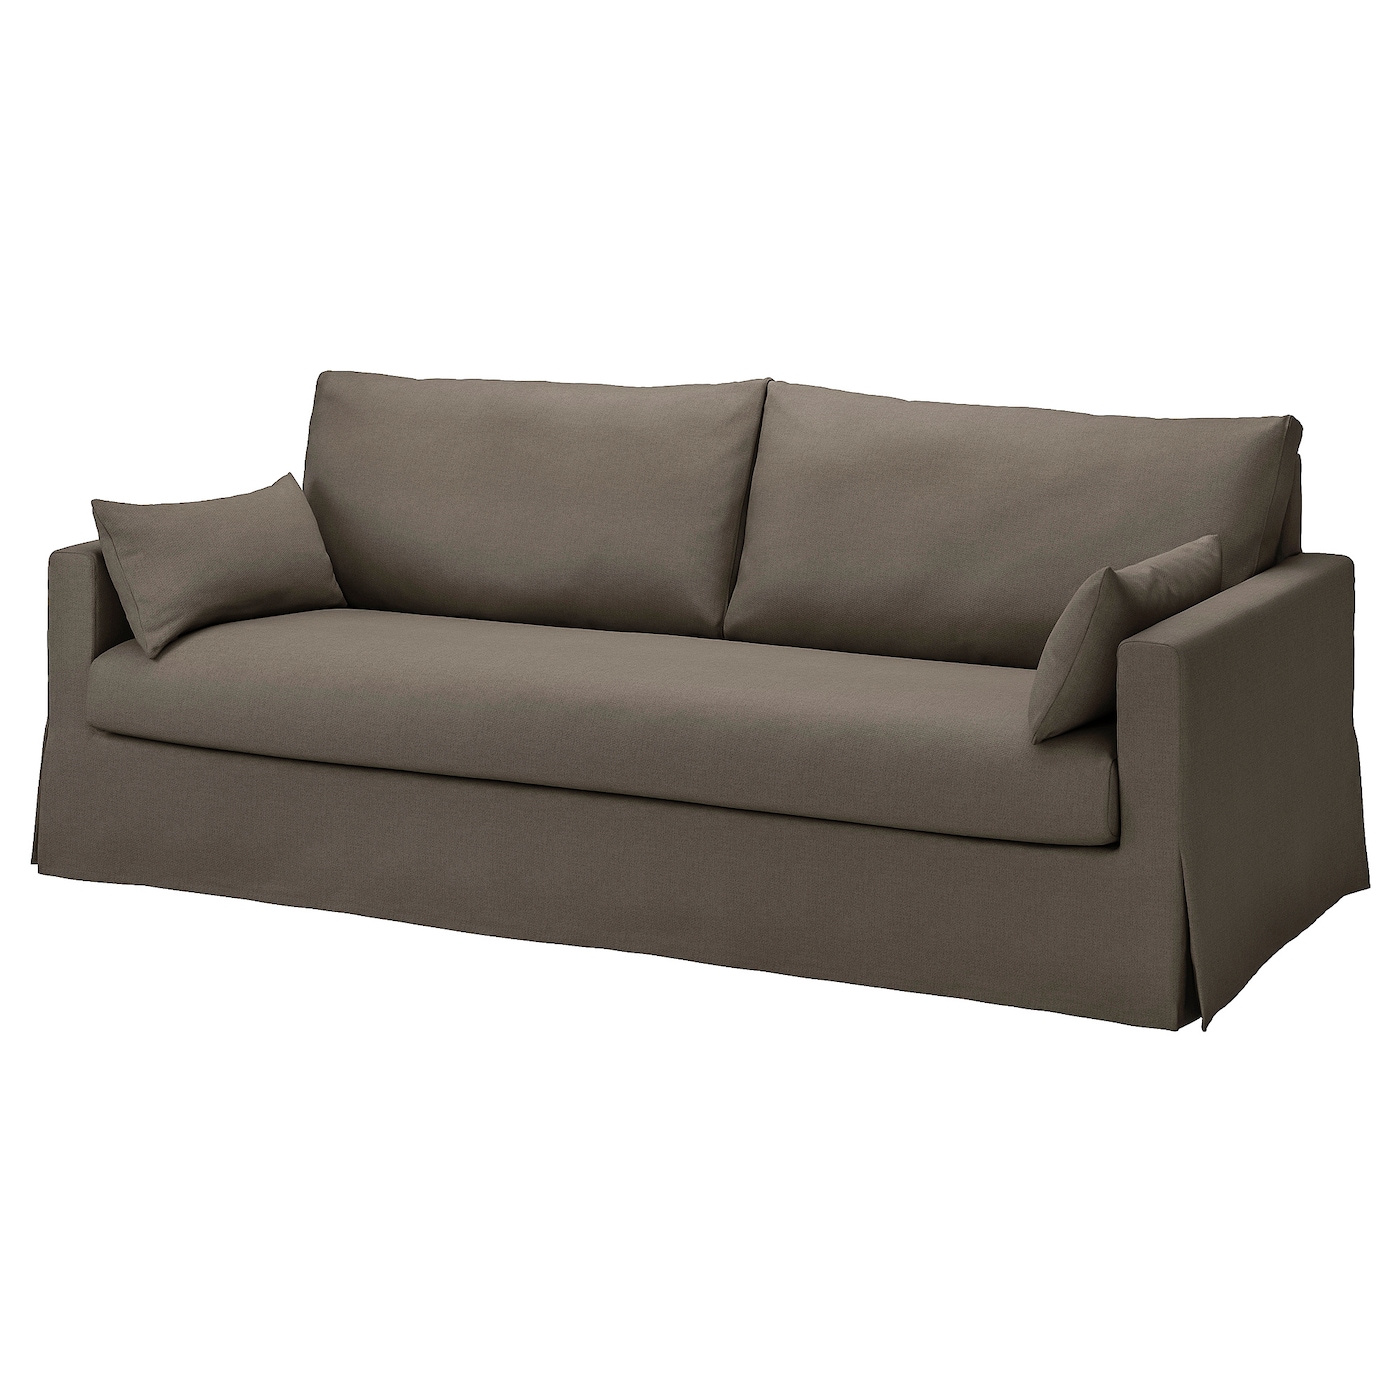 ХИЛТАРП 3-местный диван, Грансель серо-коричневый HYLTARP IKEA